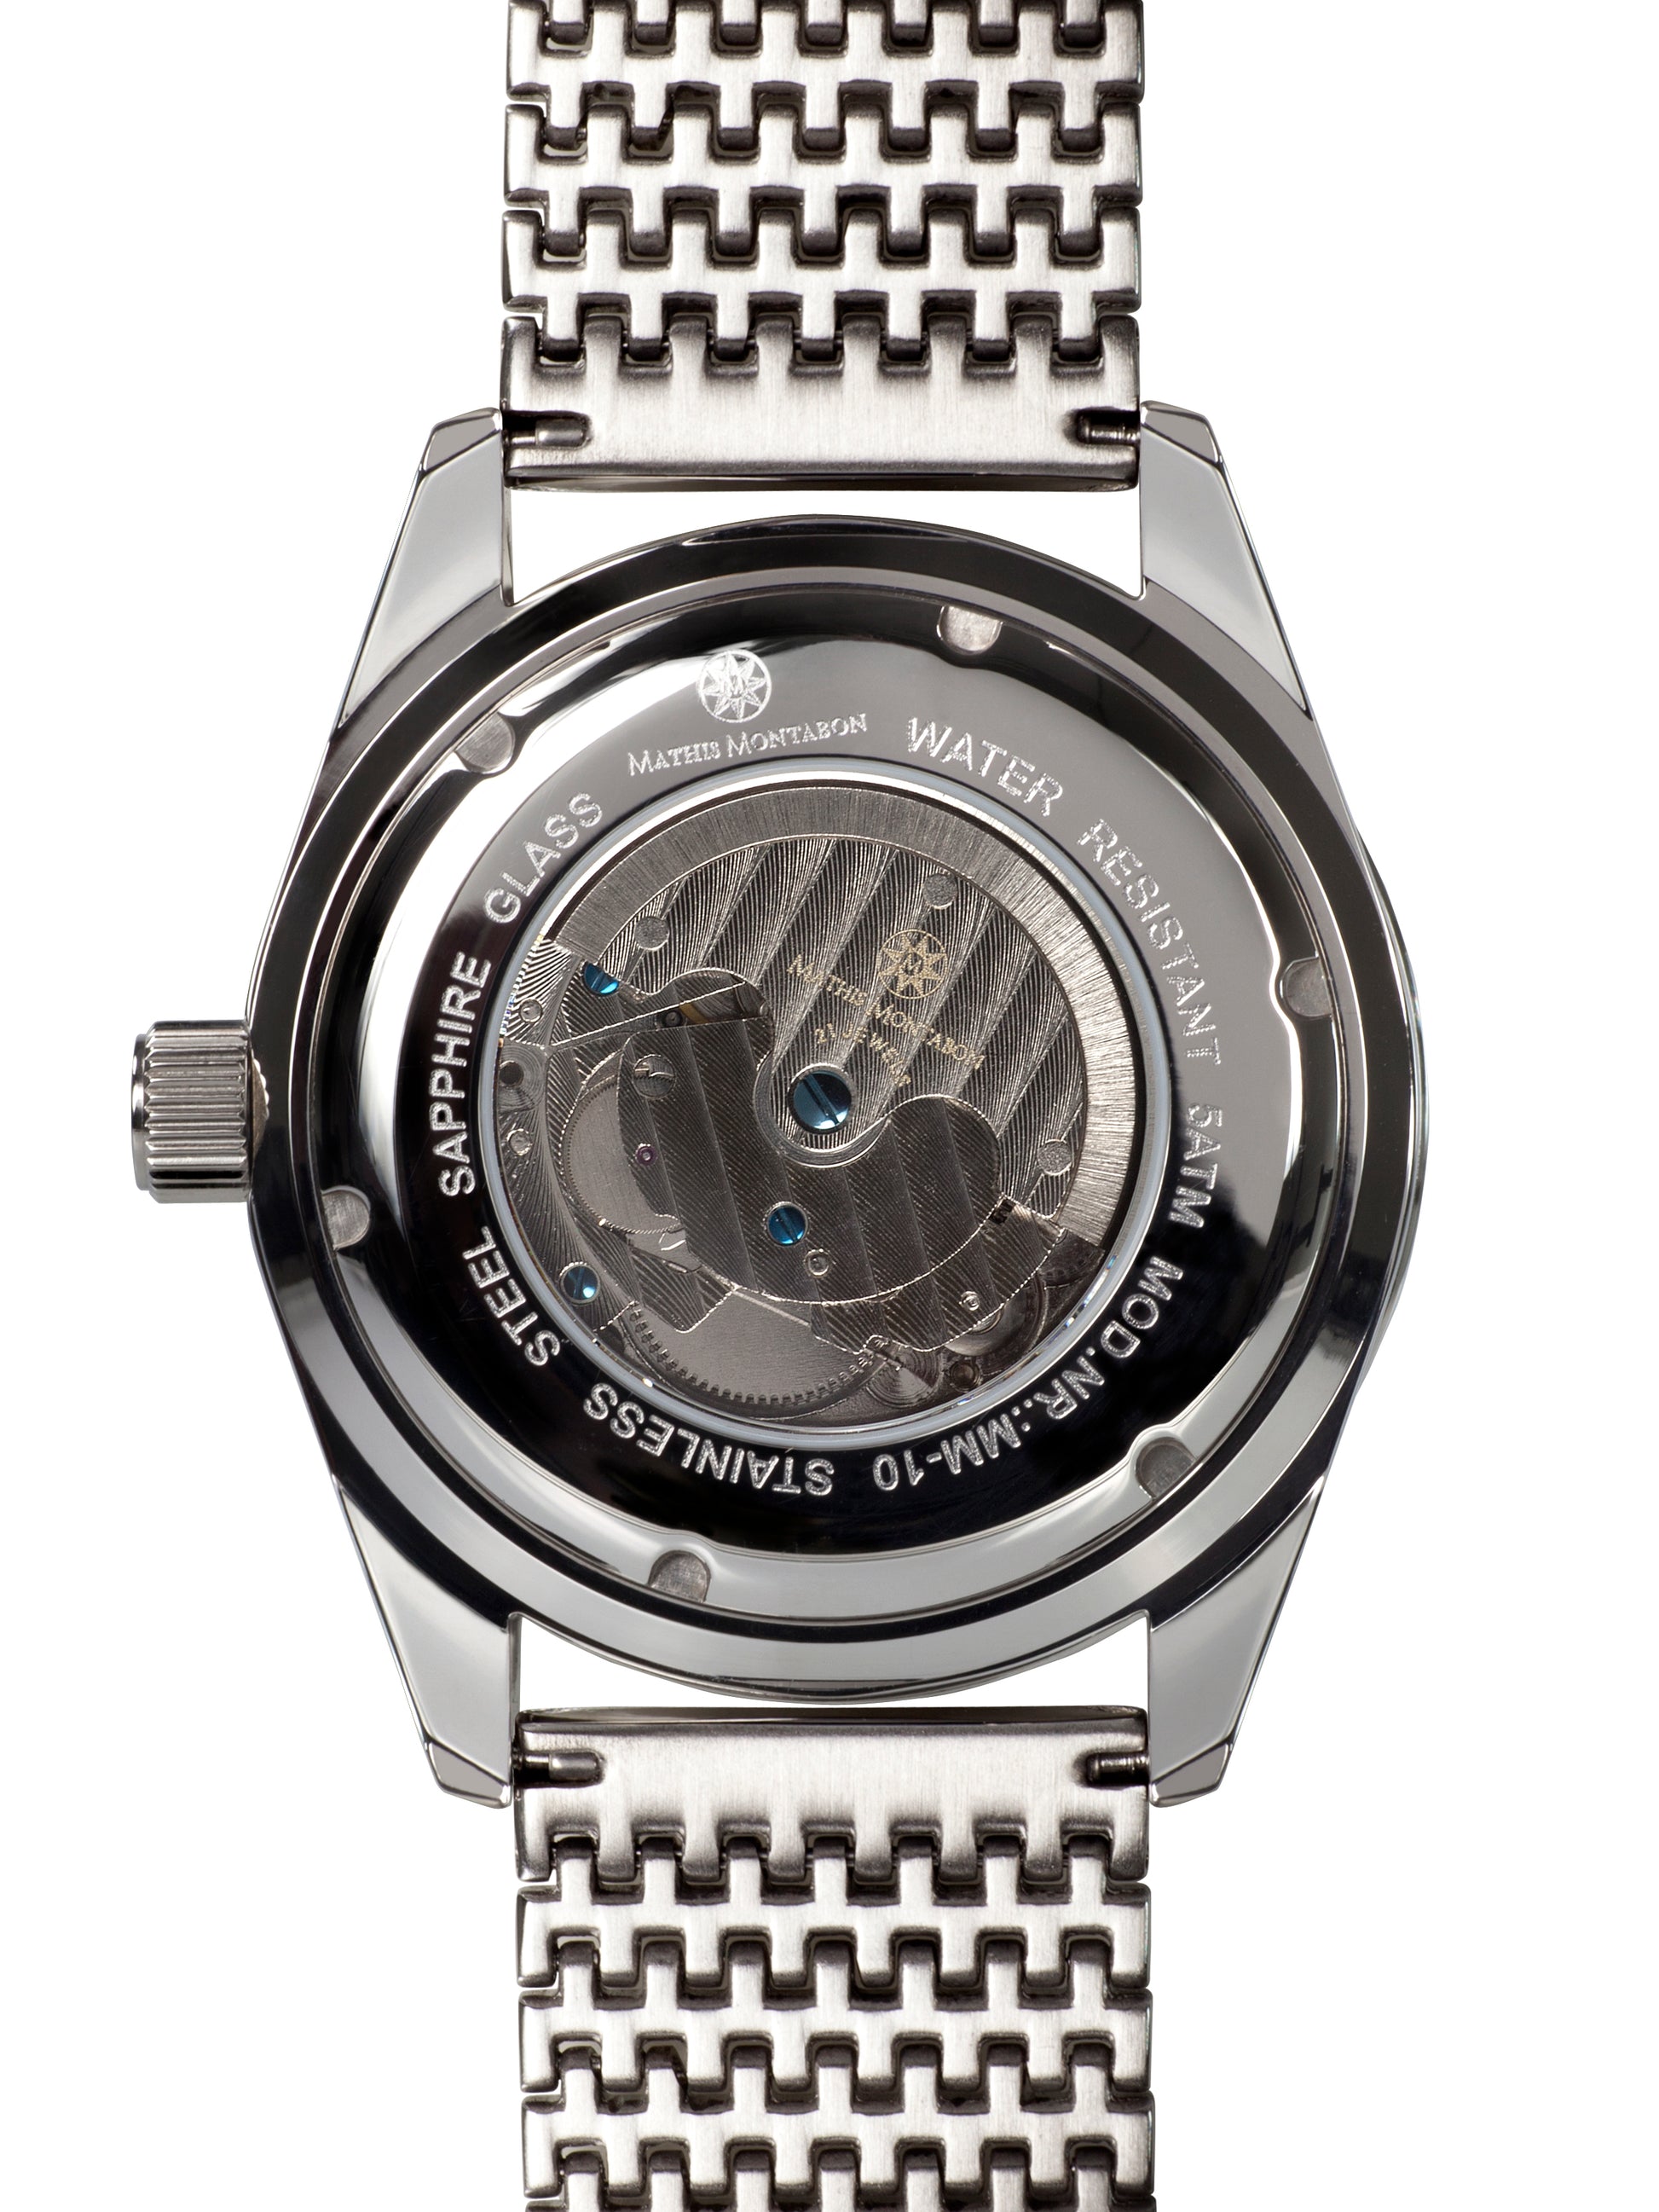 Automatic watches — Super Atlantique — Mathis Montabon — blau